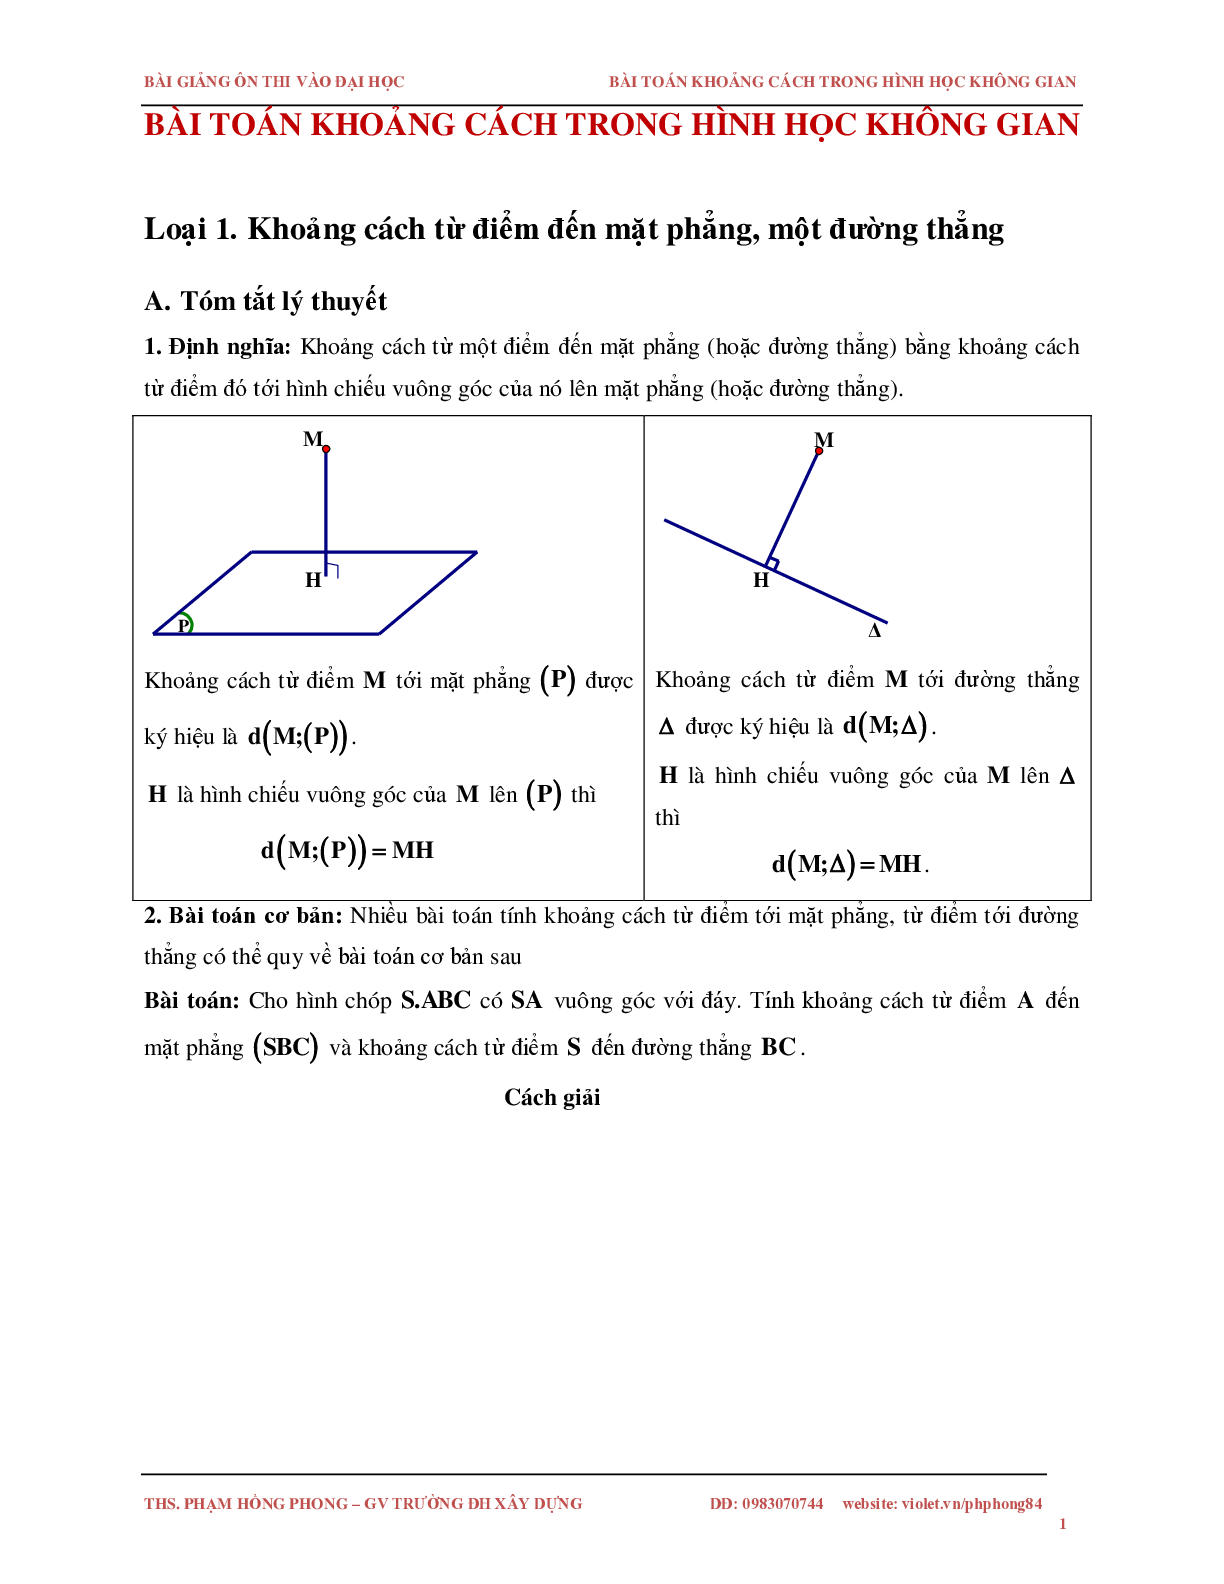 Bài toán về khoảng cách trong không gian (trang 1)